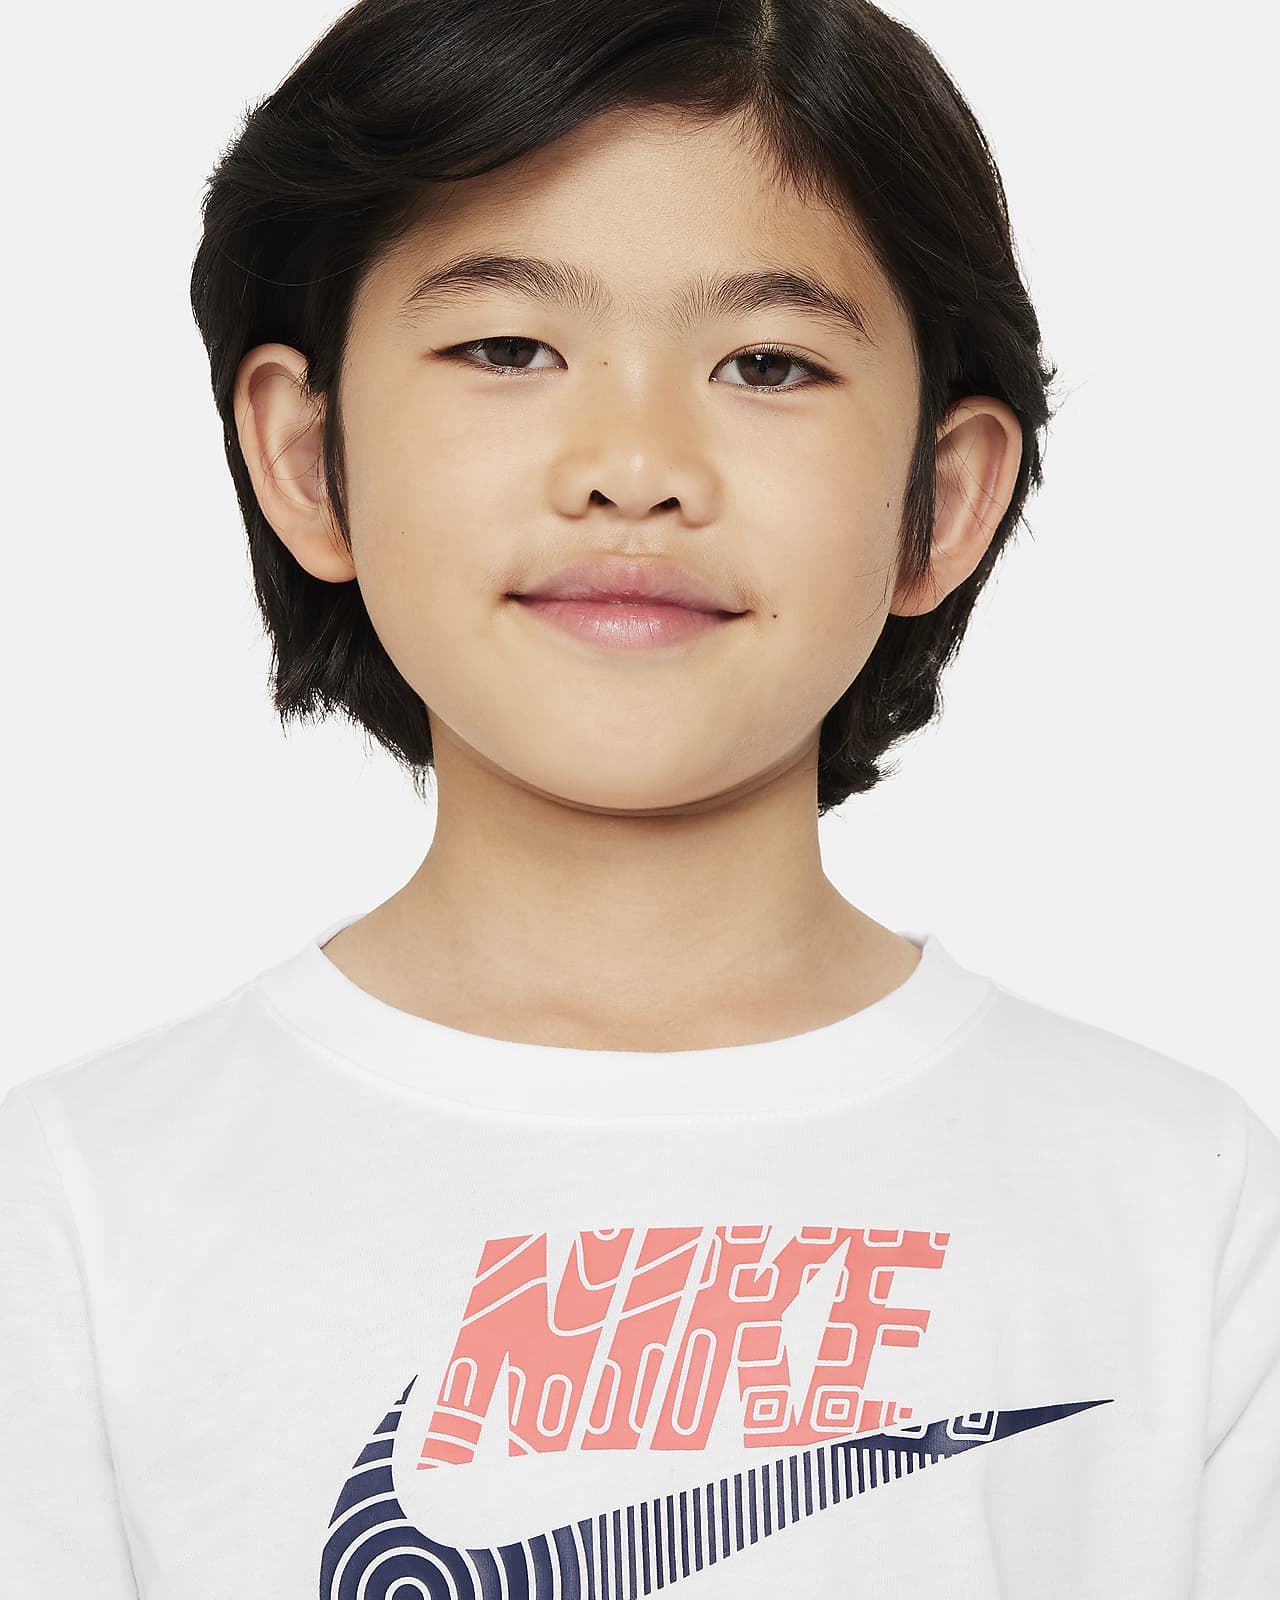 Nike Hazard Stamp Tee Toddler T-Shirt